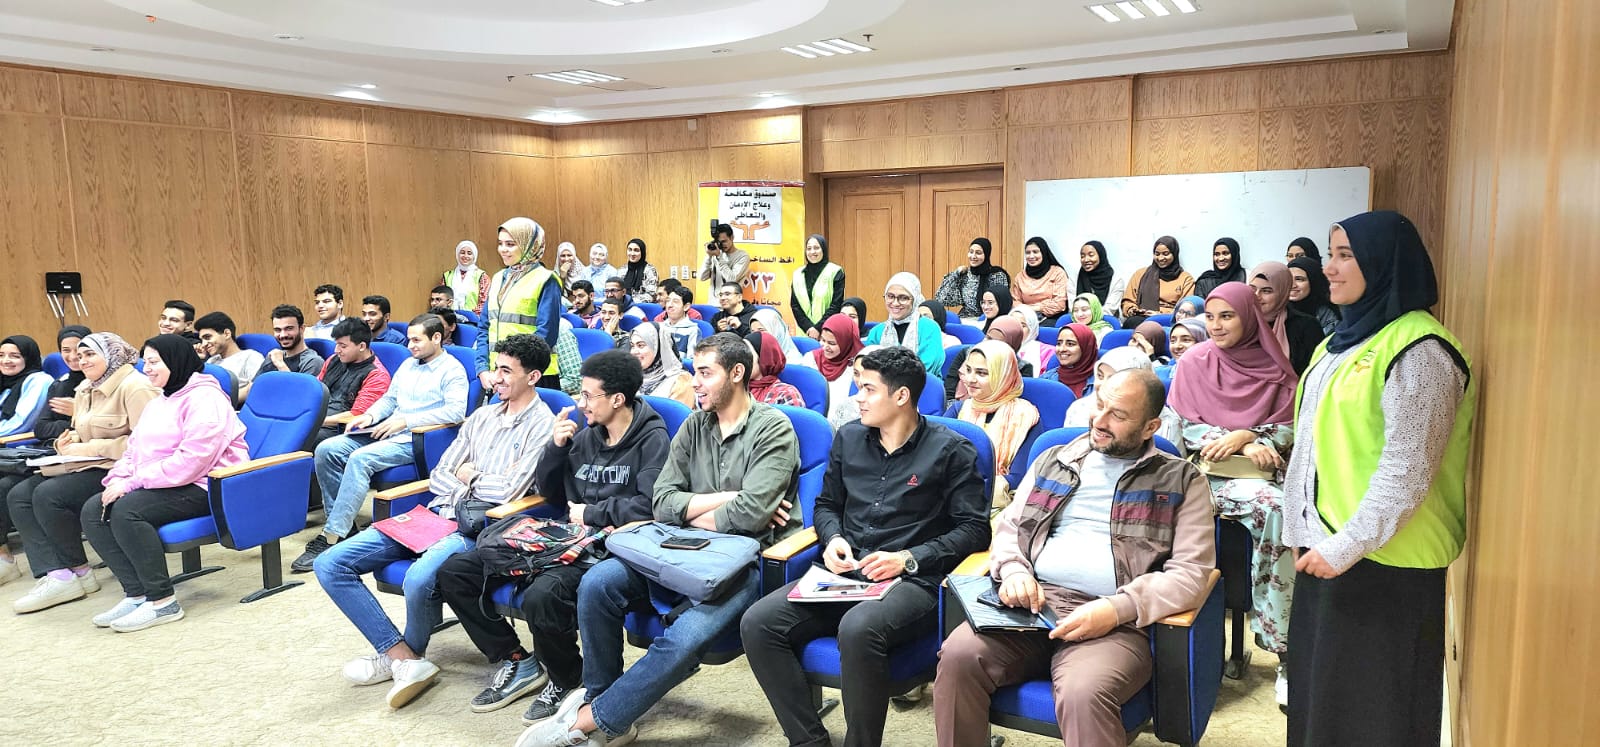 جامعة كفرالشيخ تعقد ندوة توعوية حول مخاطر الإدمان بكلية الصيدلة